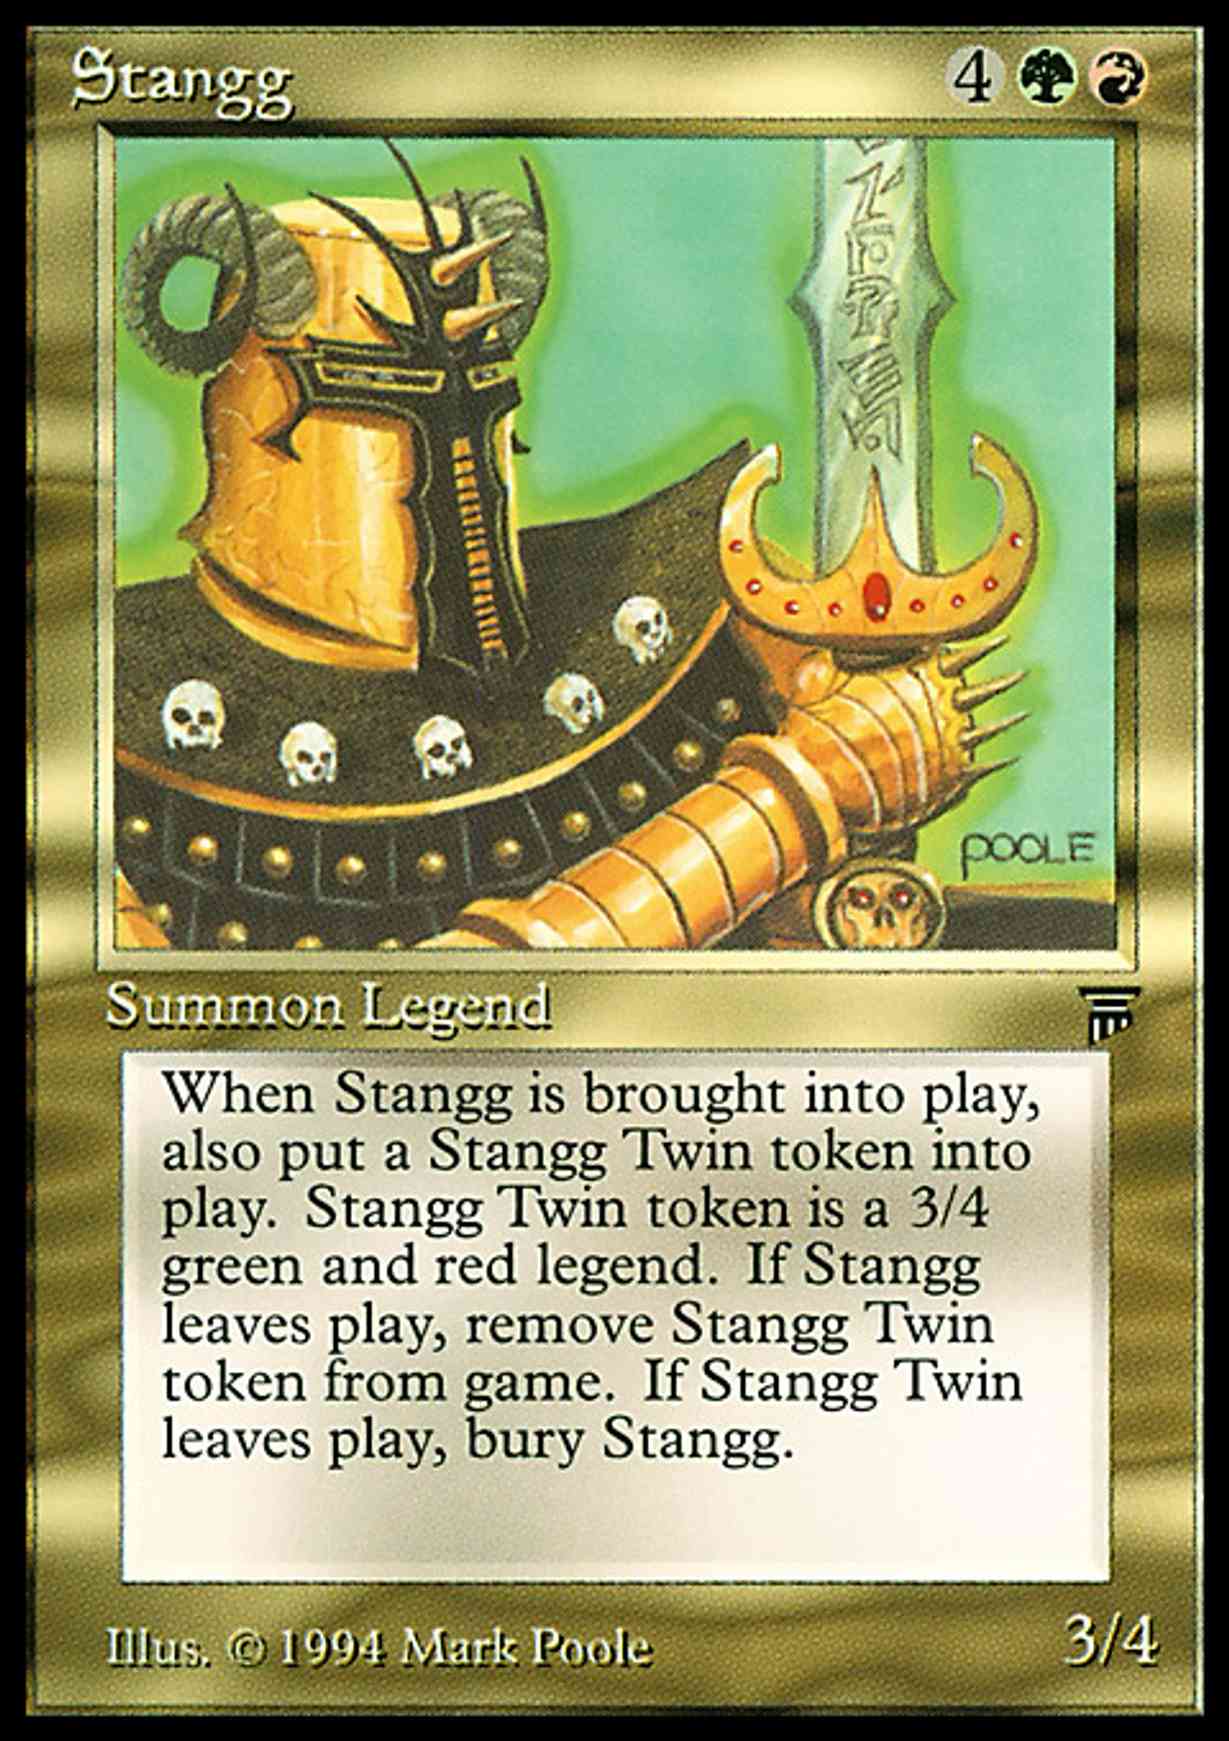 Stangg magic card front